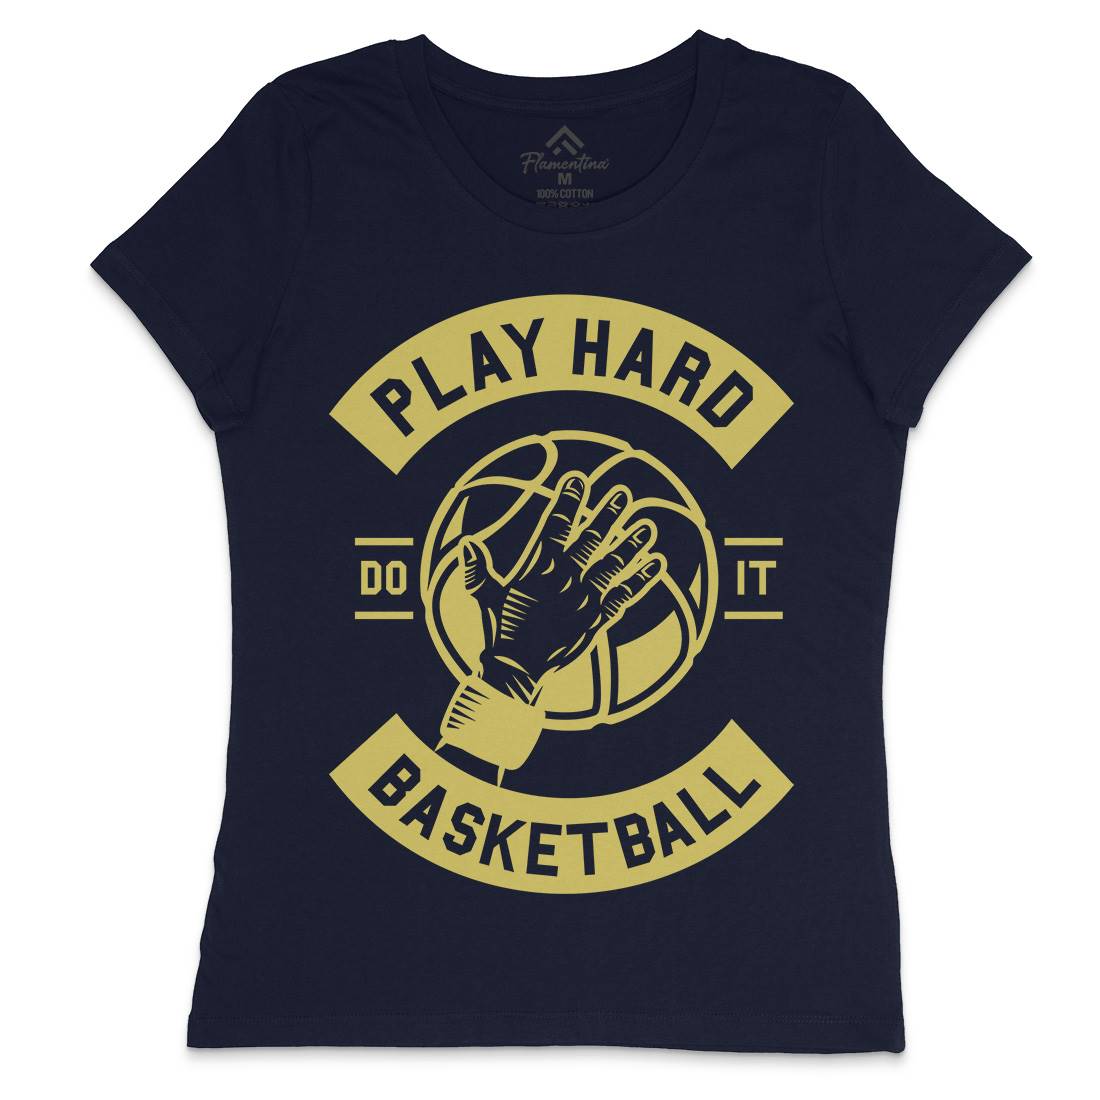 Play Hard Basketball Womens Crew Neck T-Shirt Sport A261